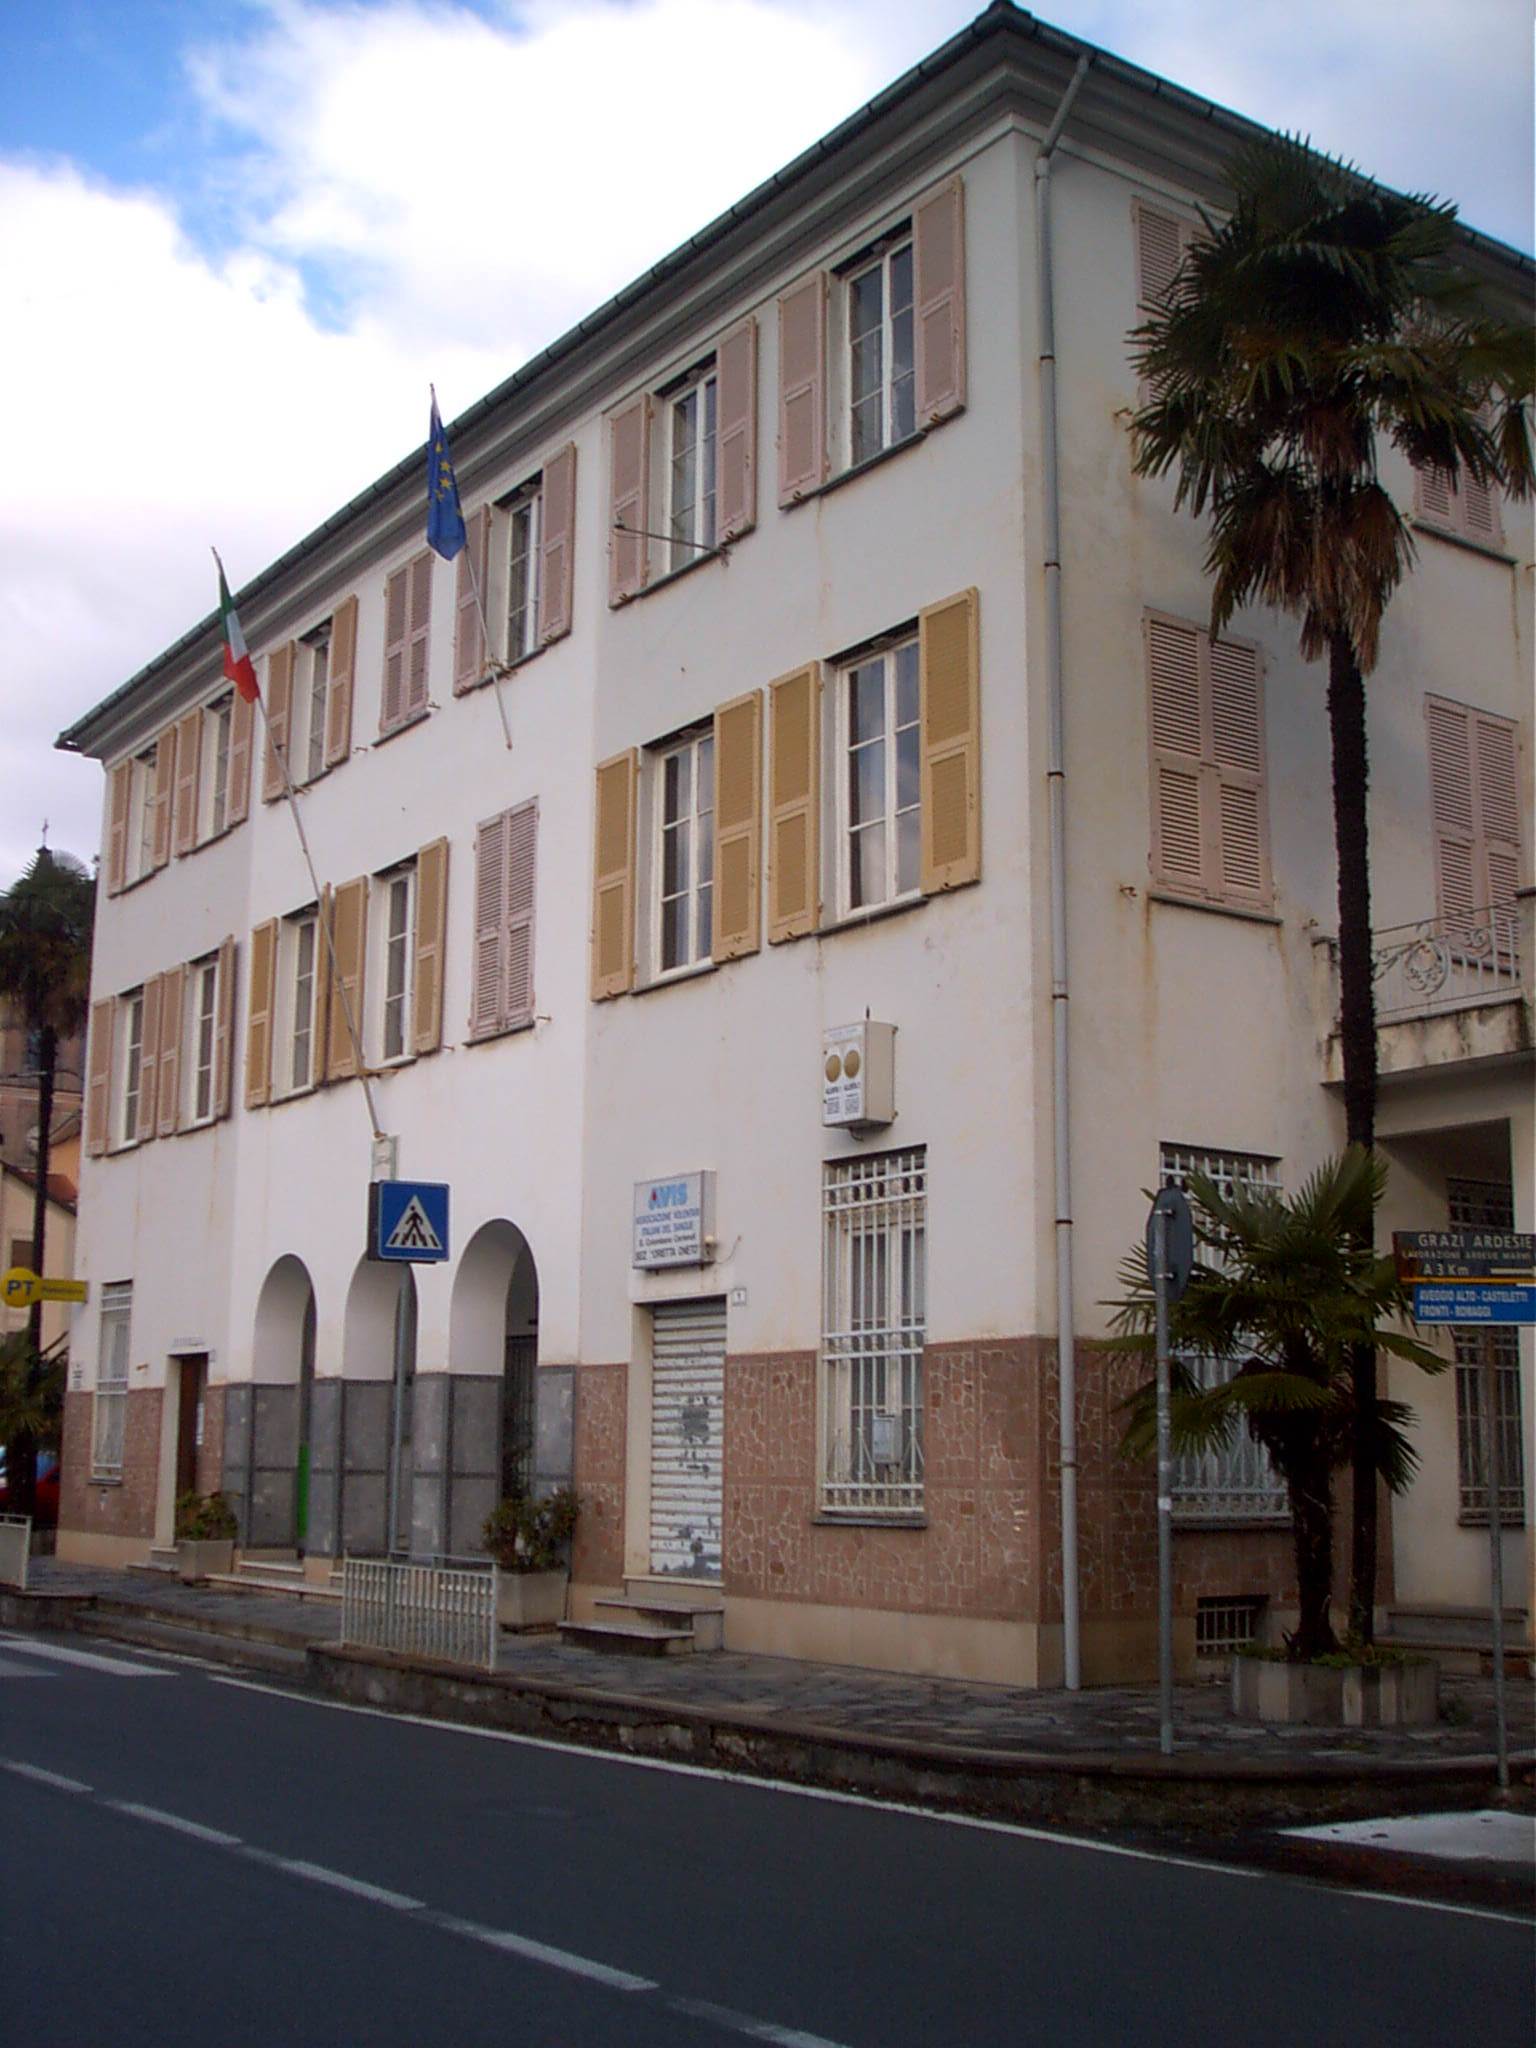 Il municipio di San Colombano Certenoli